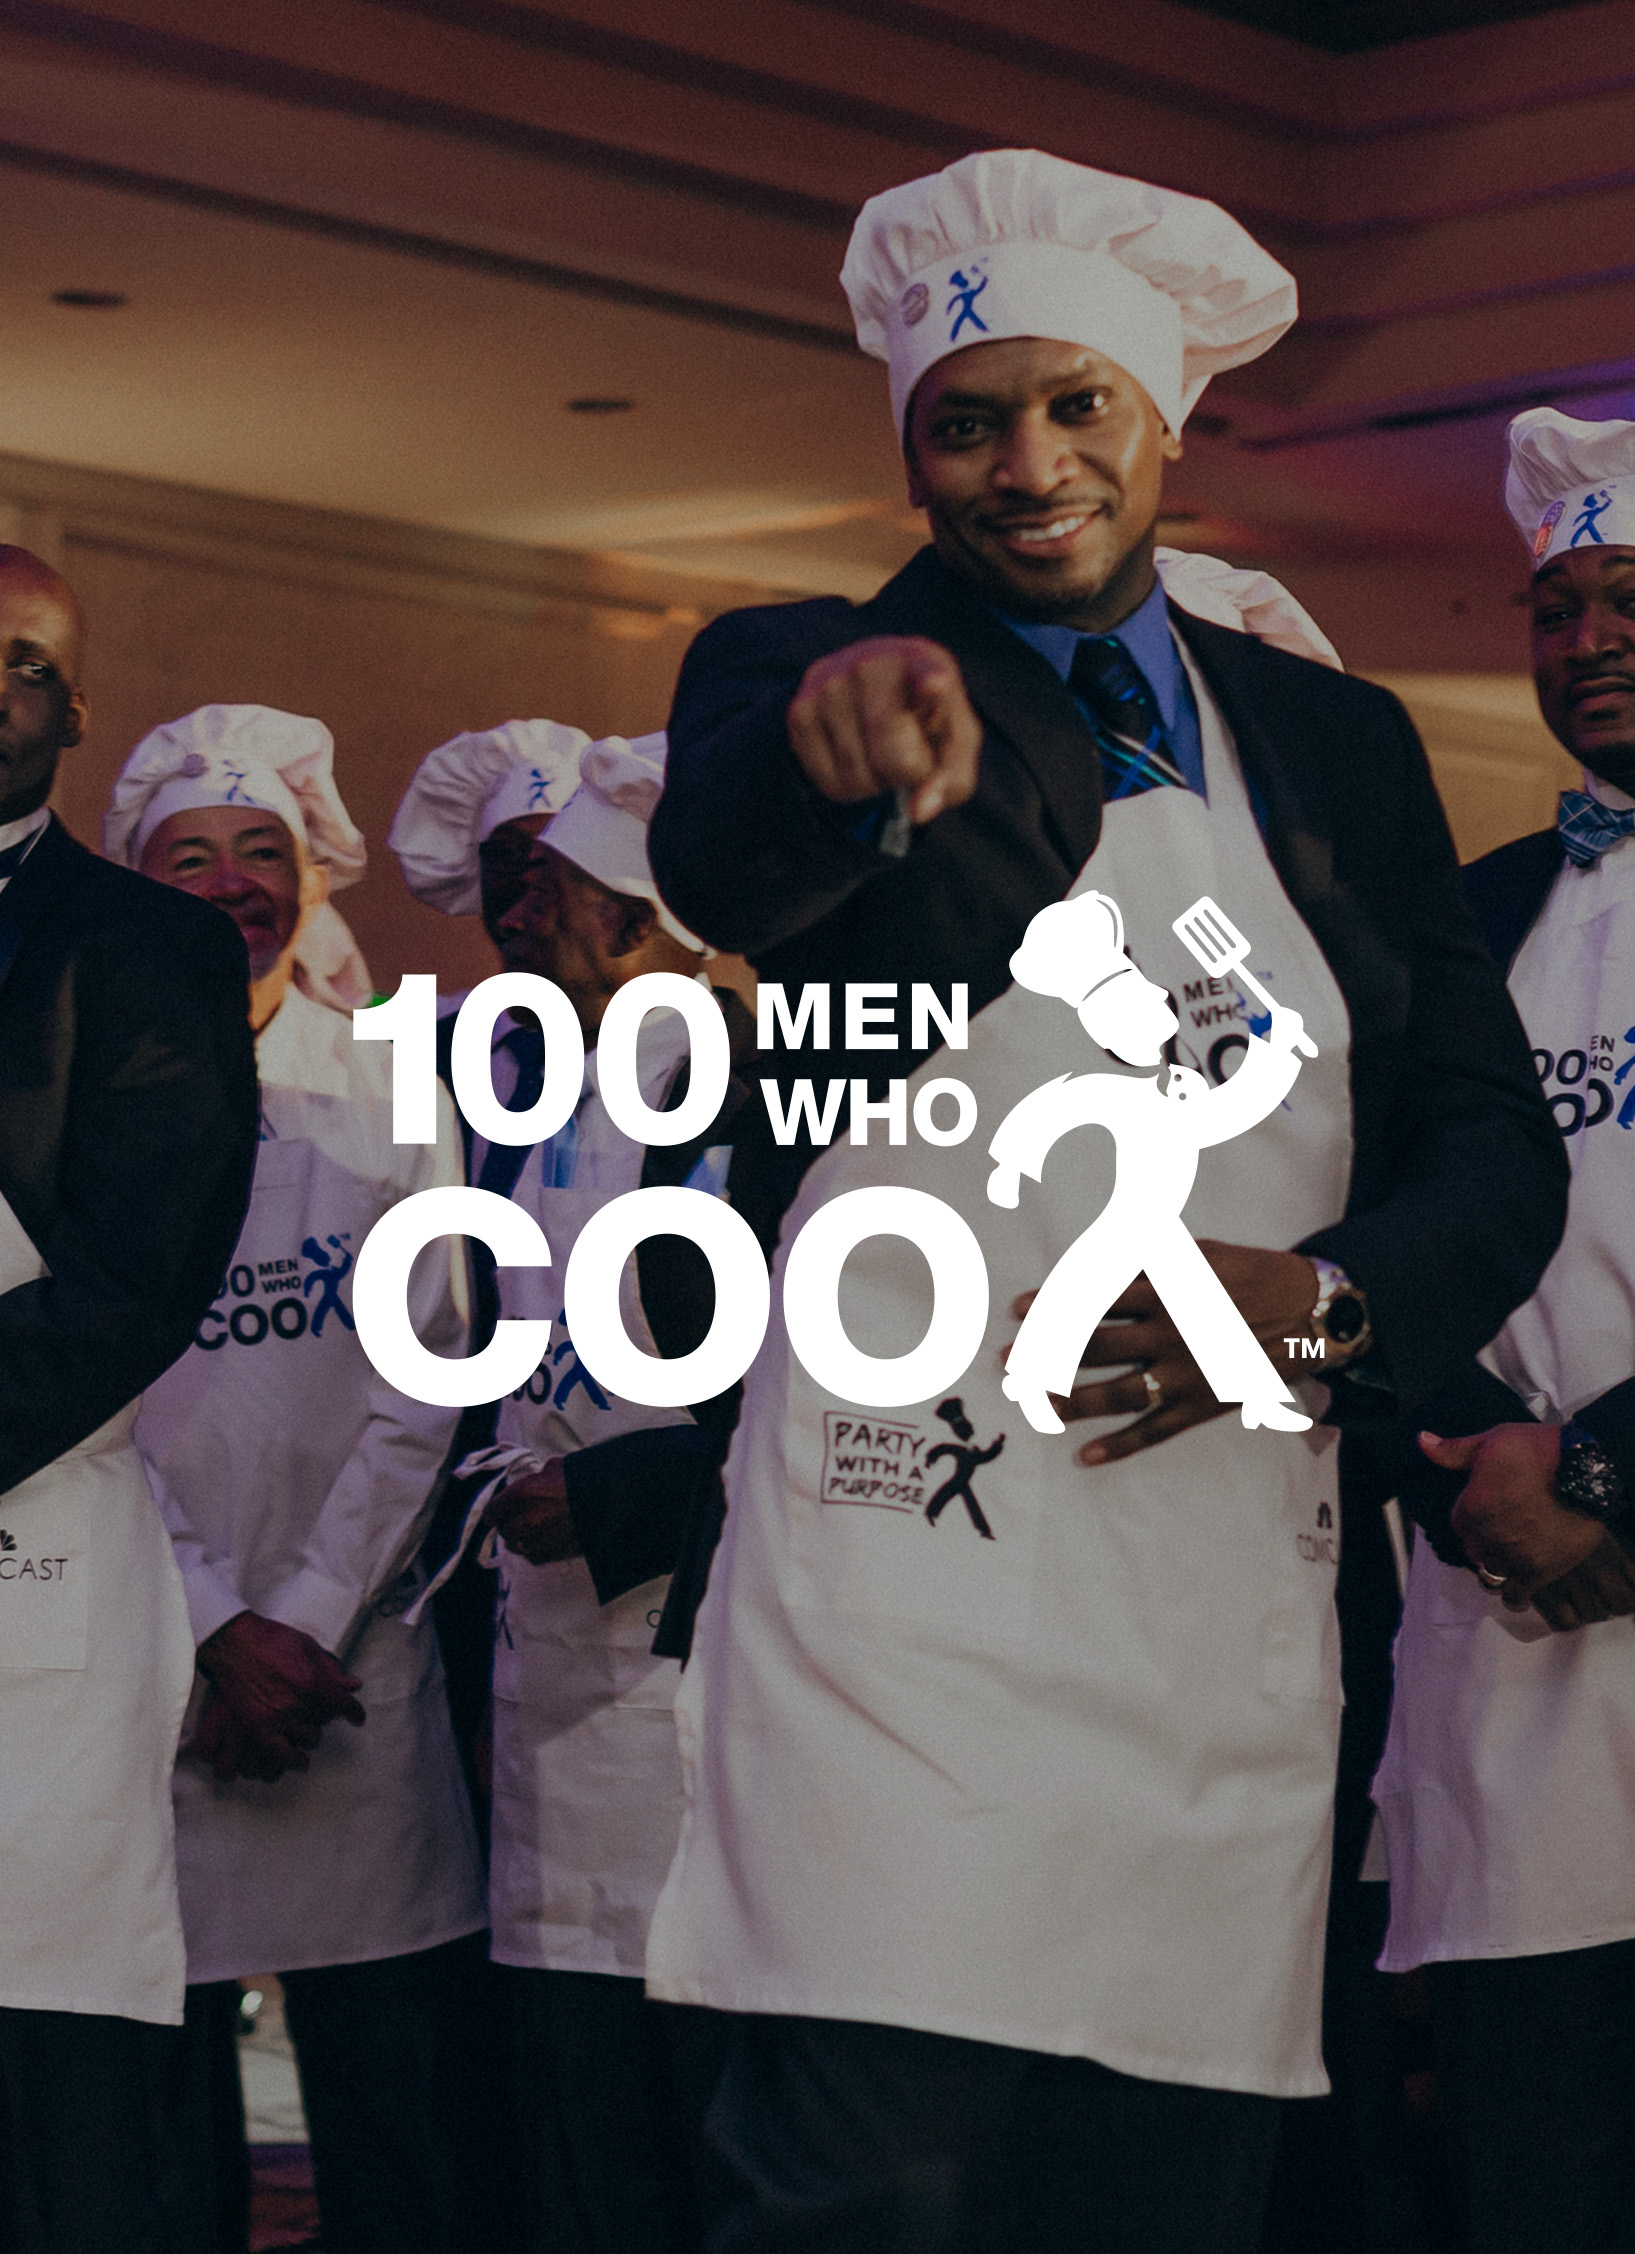 100 Men Who Cook